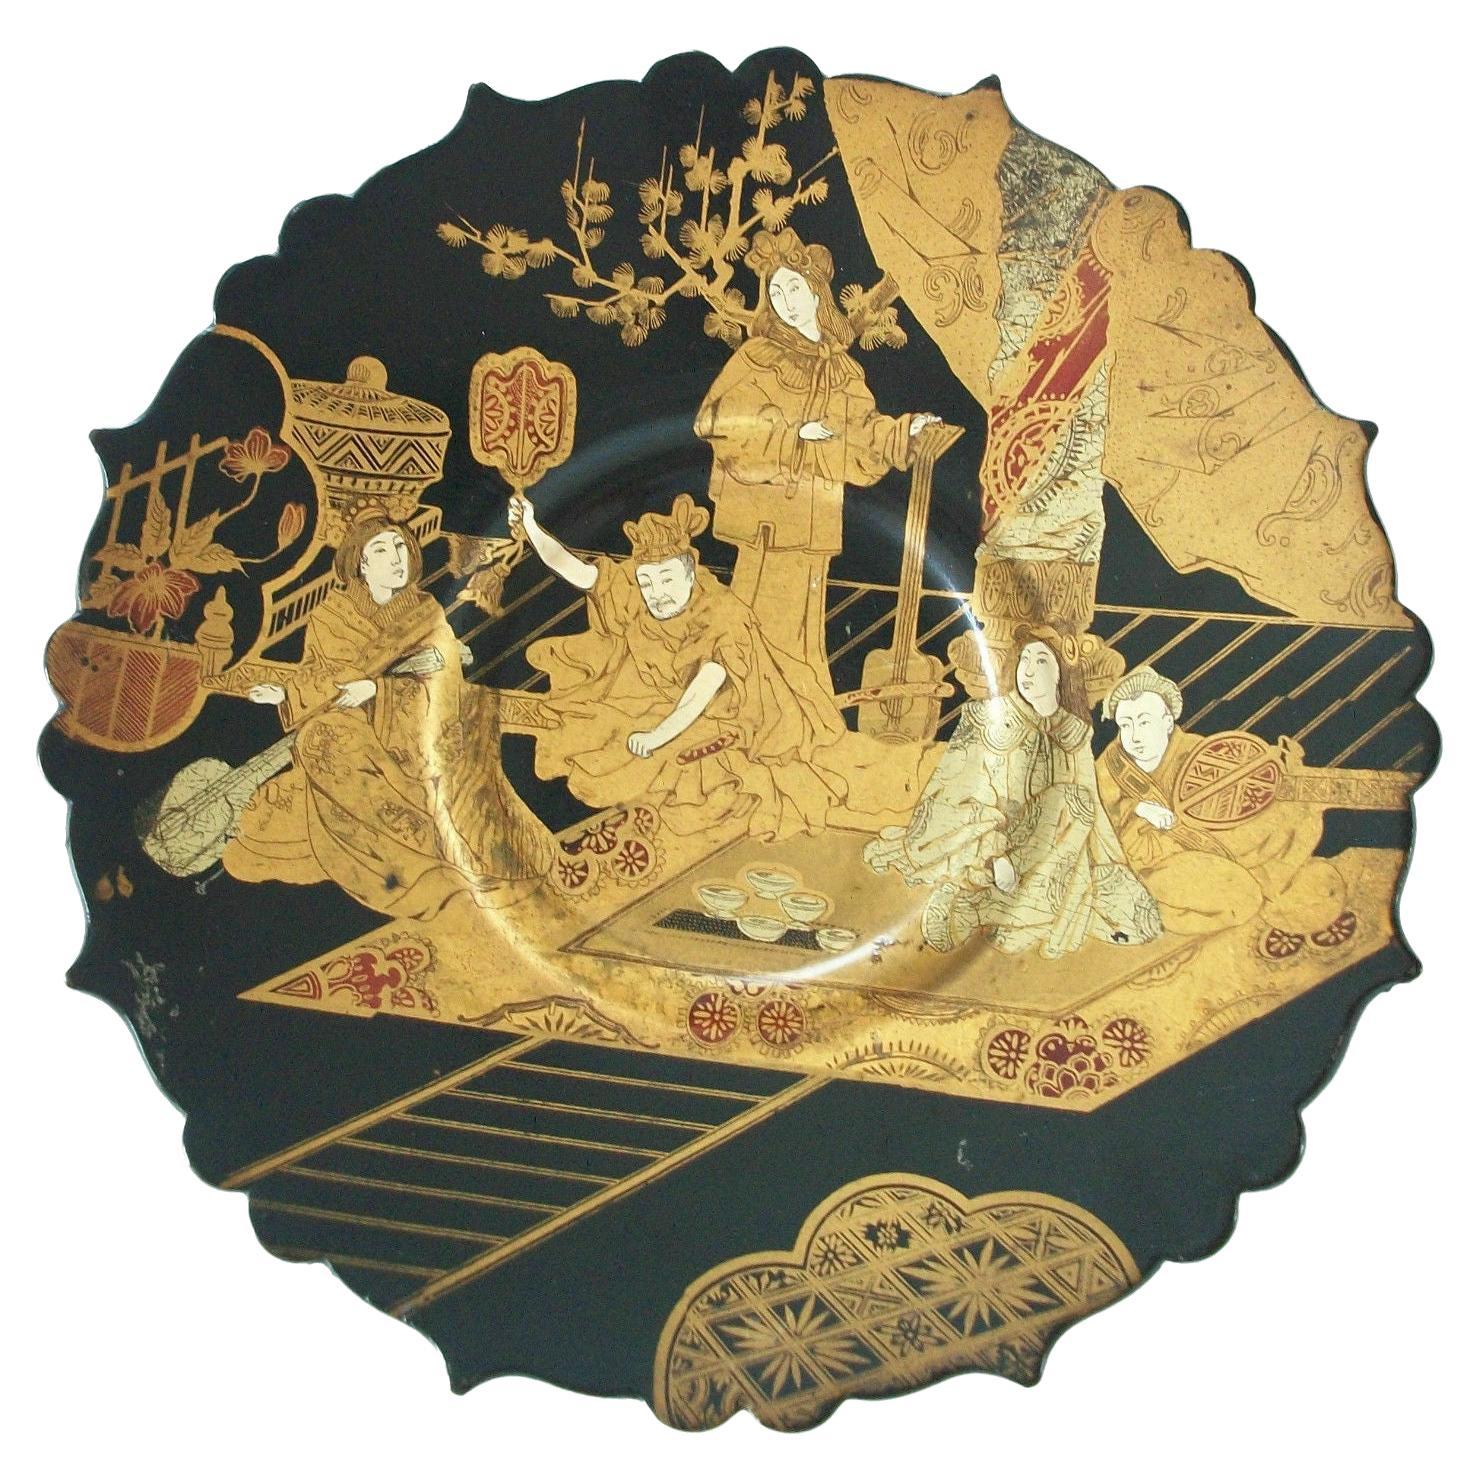 Orientalischer, handbemalter und vergoldeter schwarzer Lackteller oder Teller, 19. Jahrhundert